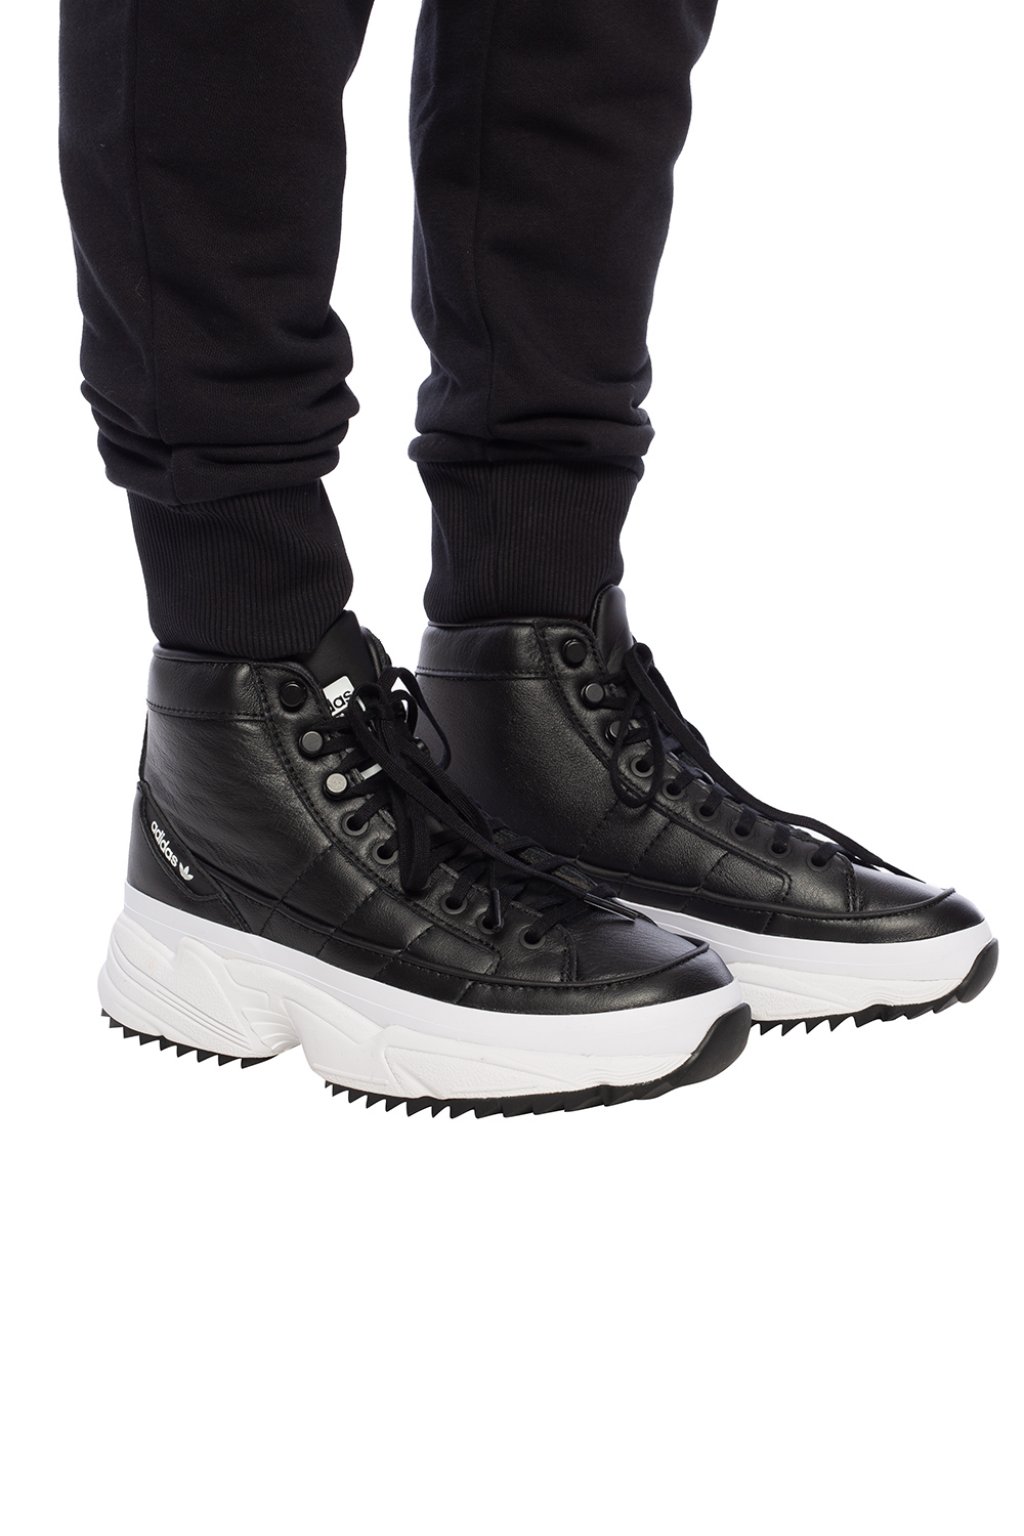 adidas originals kiellor xtra boot in black